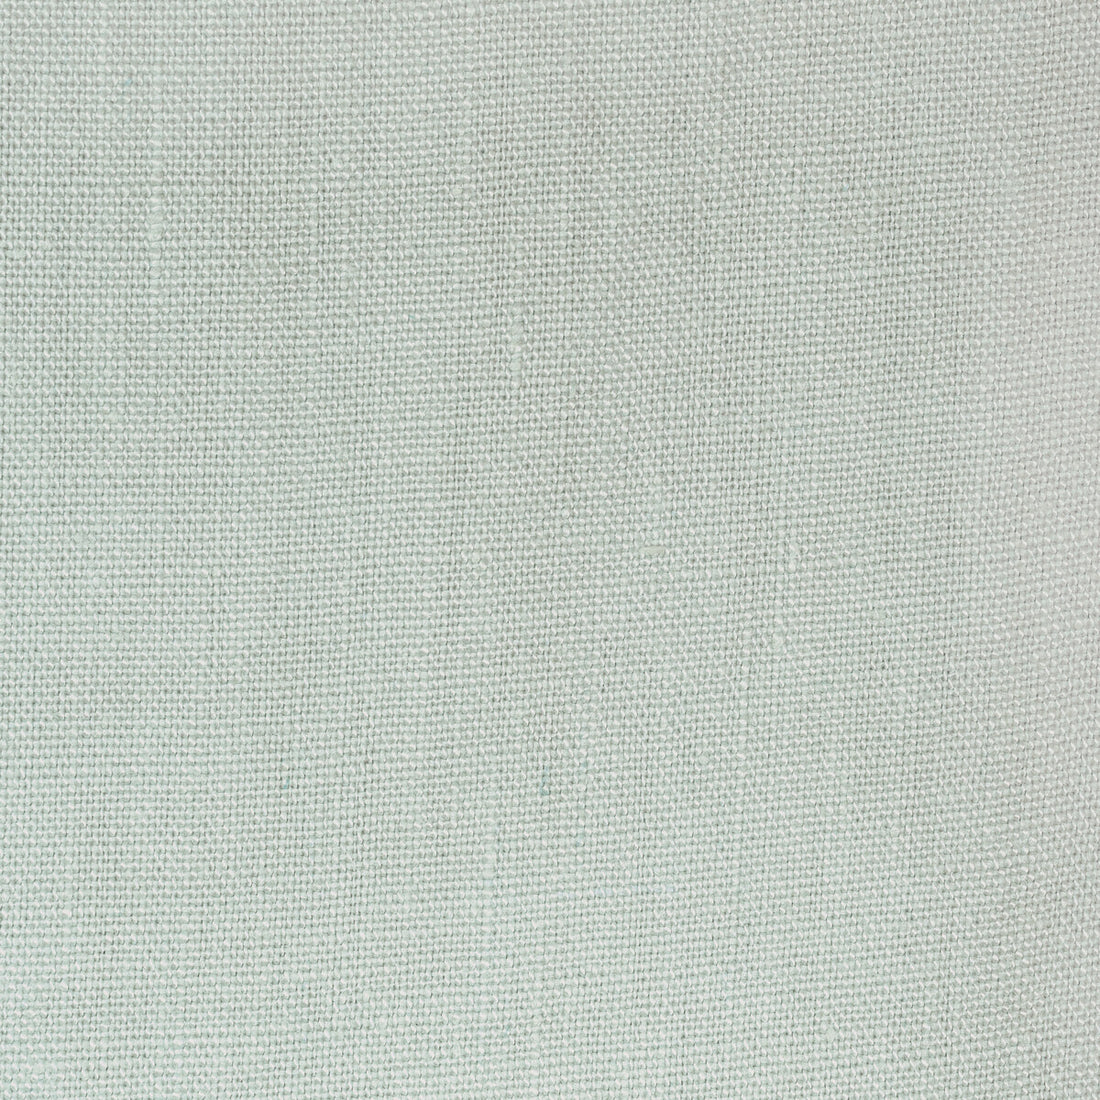 Kravet Basics fabric in 36332-1123 color - pattern 36332.1123.0 - by Kravet Basics